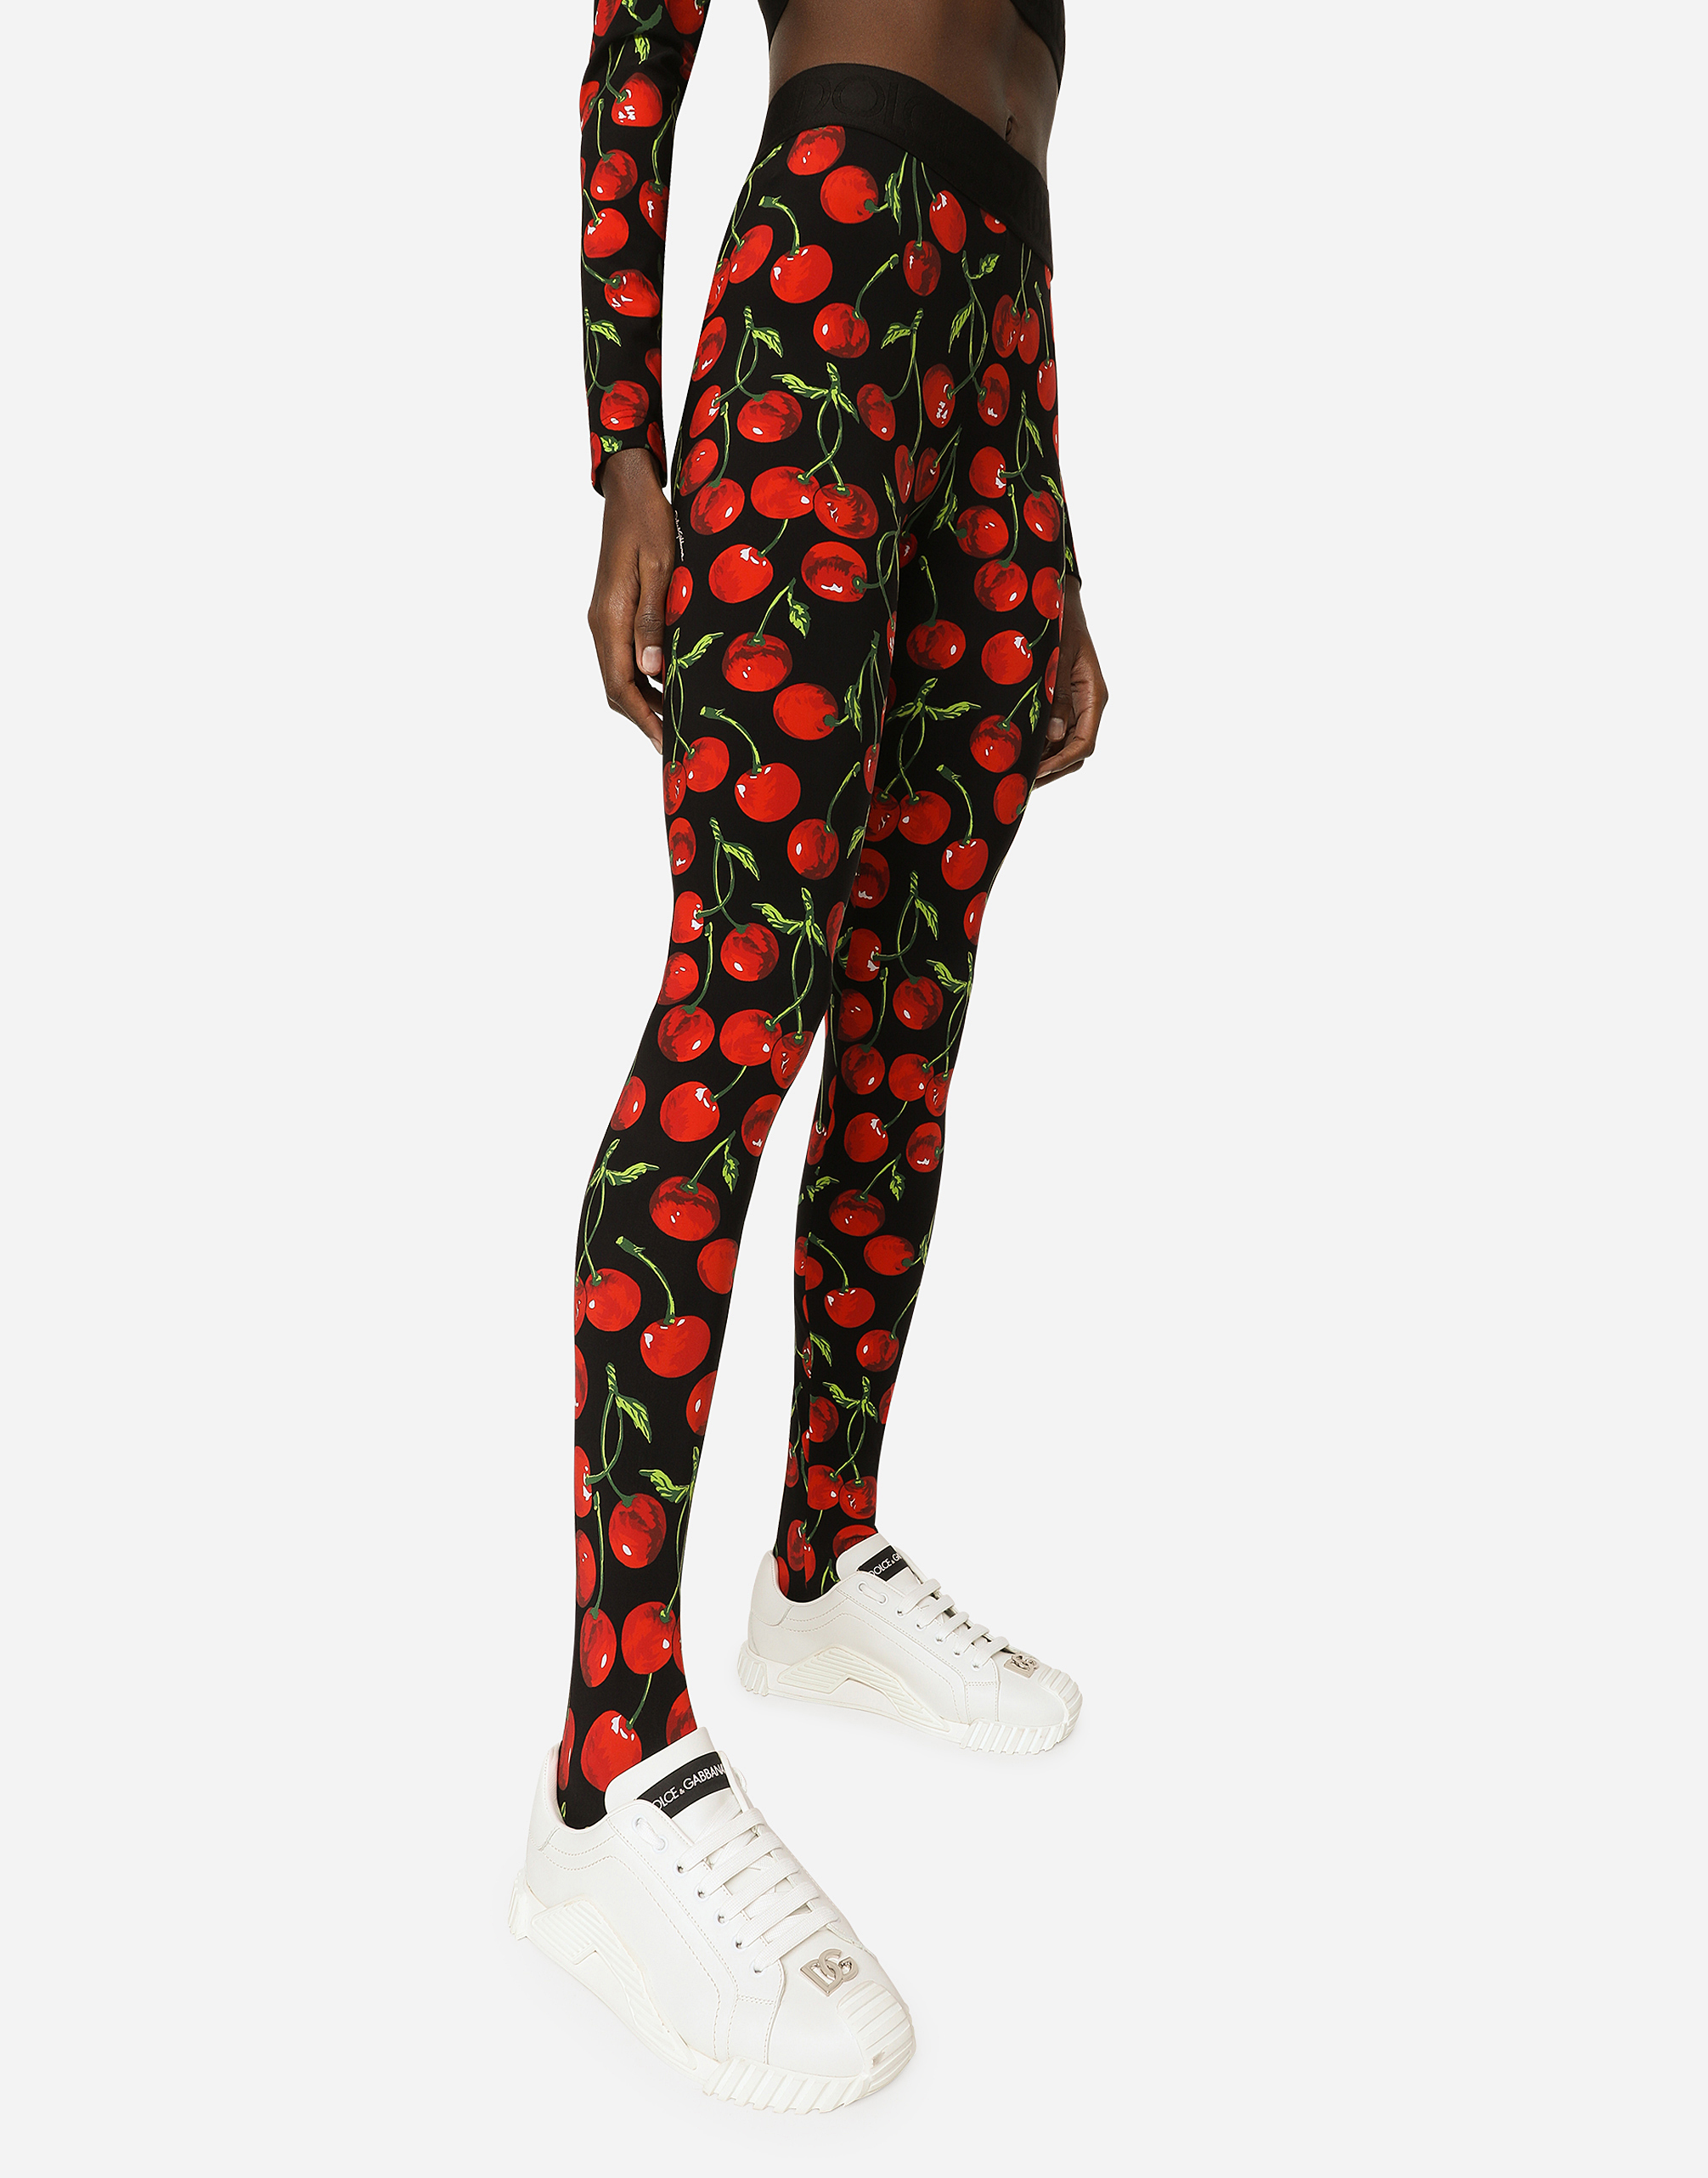 IetpShops Denmark - Patterned leggings Dolce & Gabbana - Чоловічі